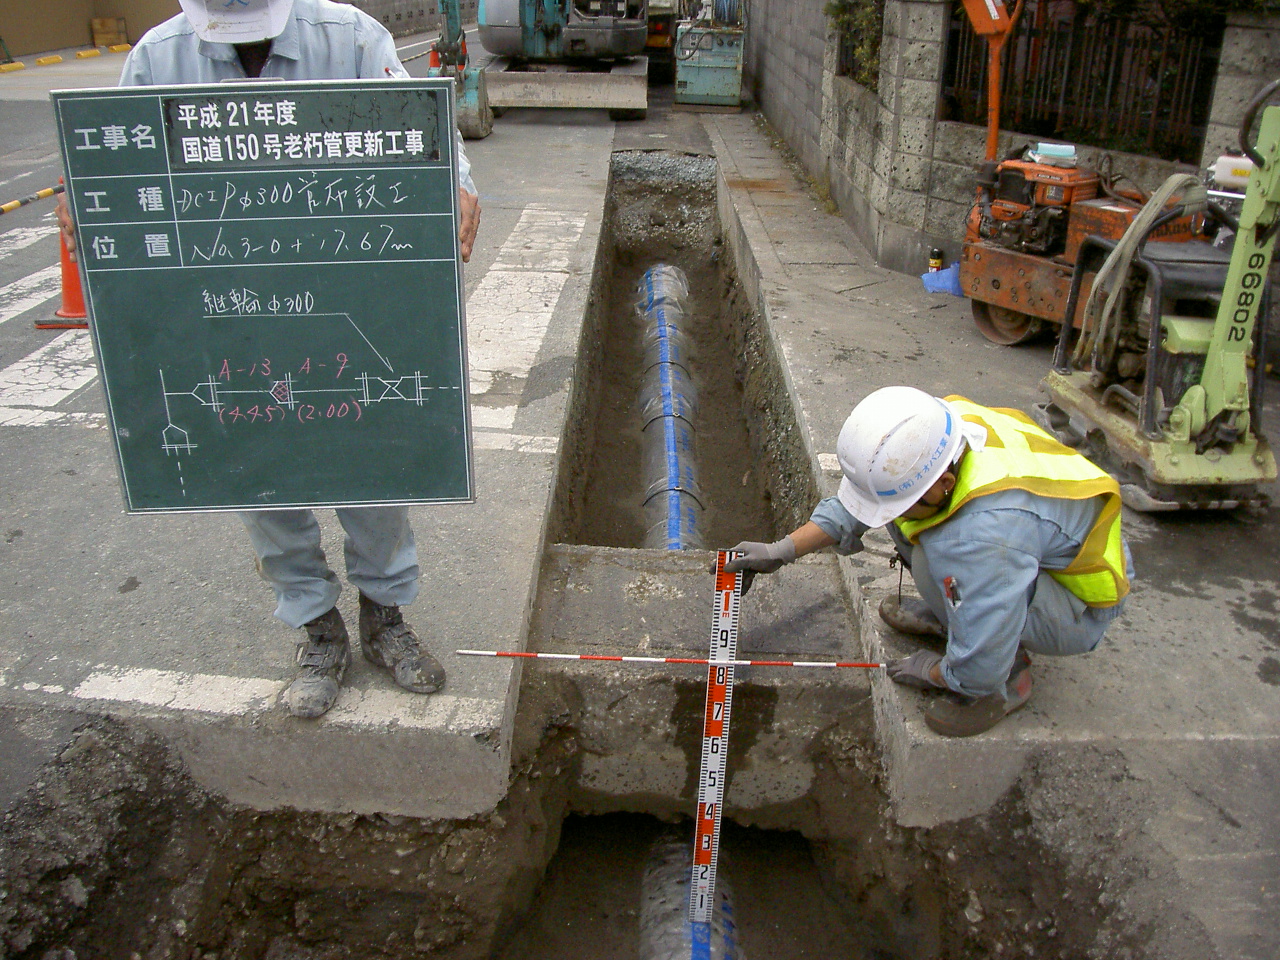 Đơn hàng lắp đặt đường ống đi Nhật là gì?